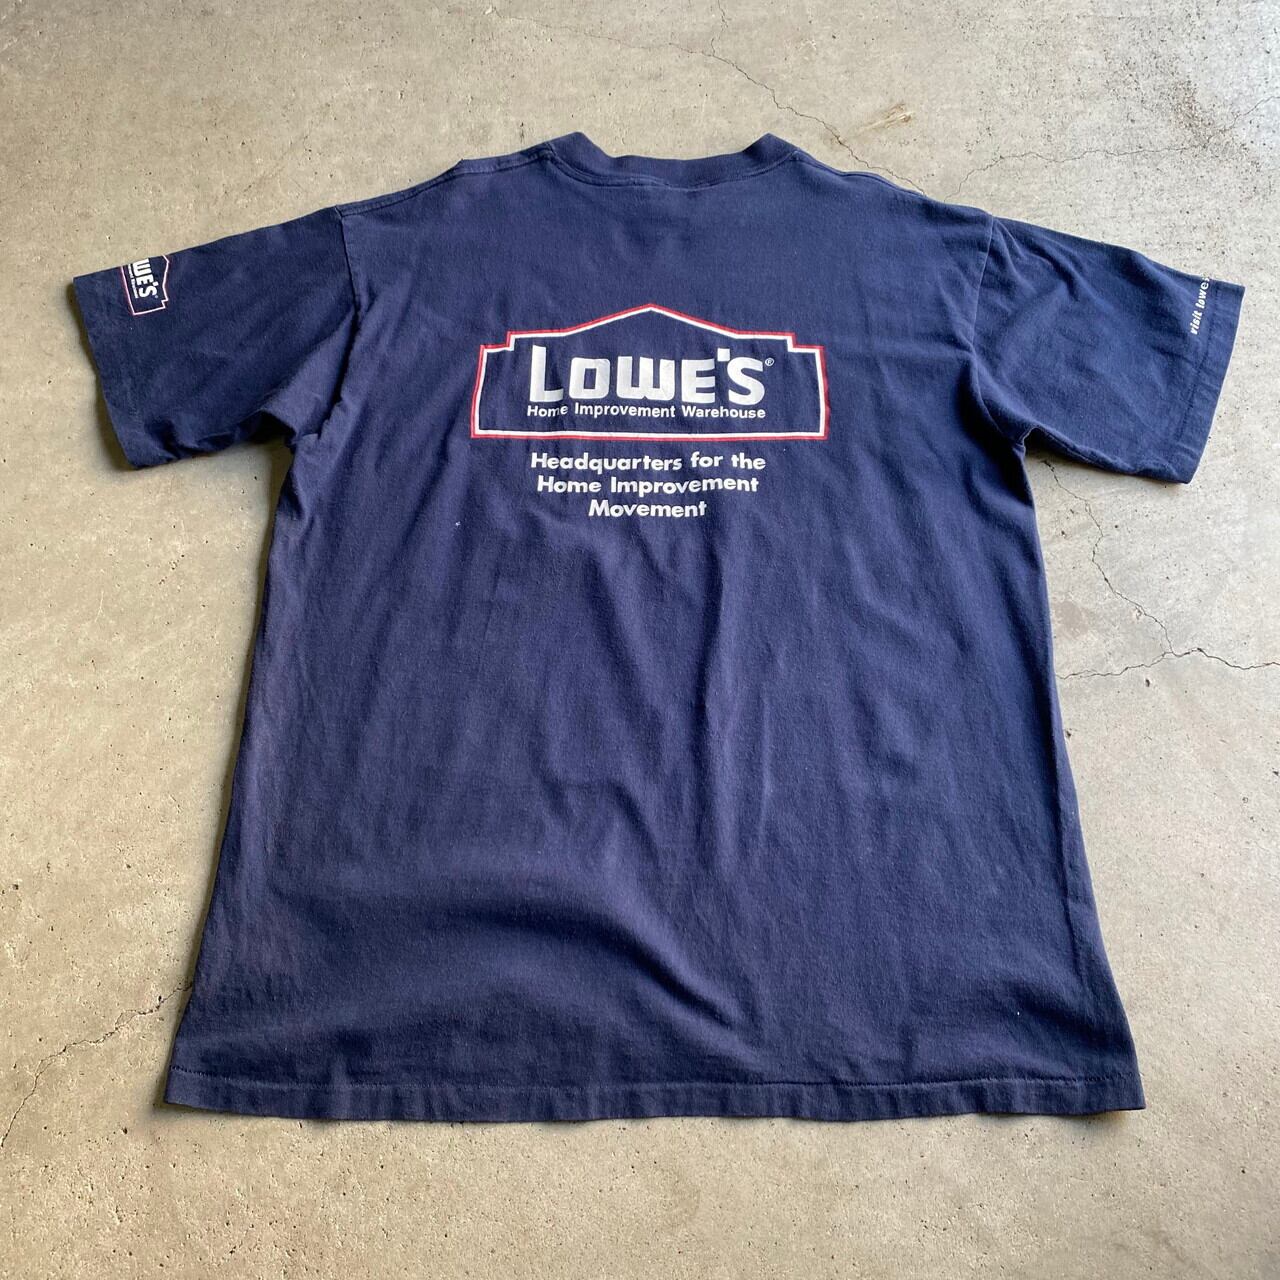 USA 90s～ 企業物 チリソース Tシャツ M 赤 漢字 オールド